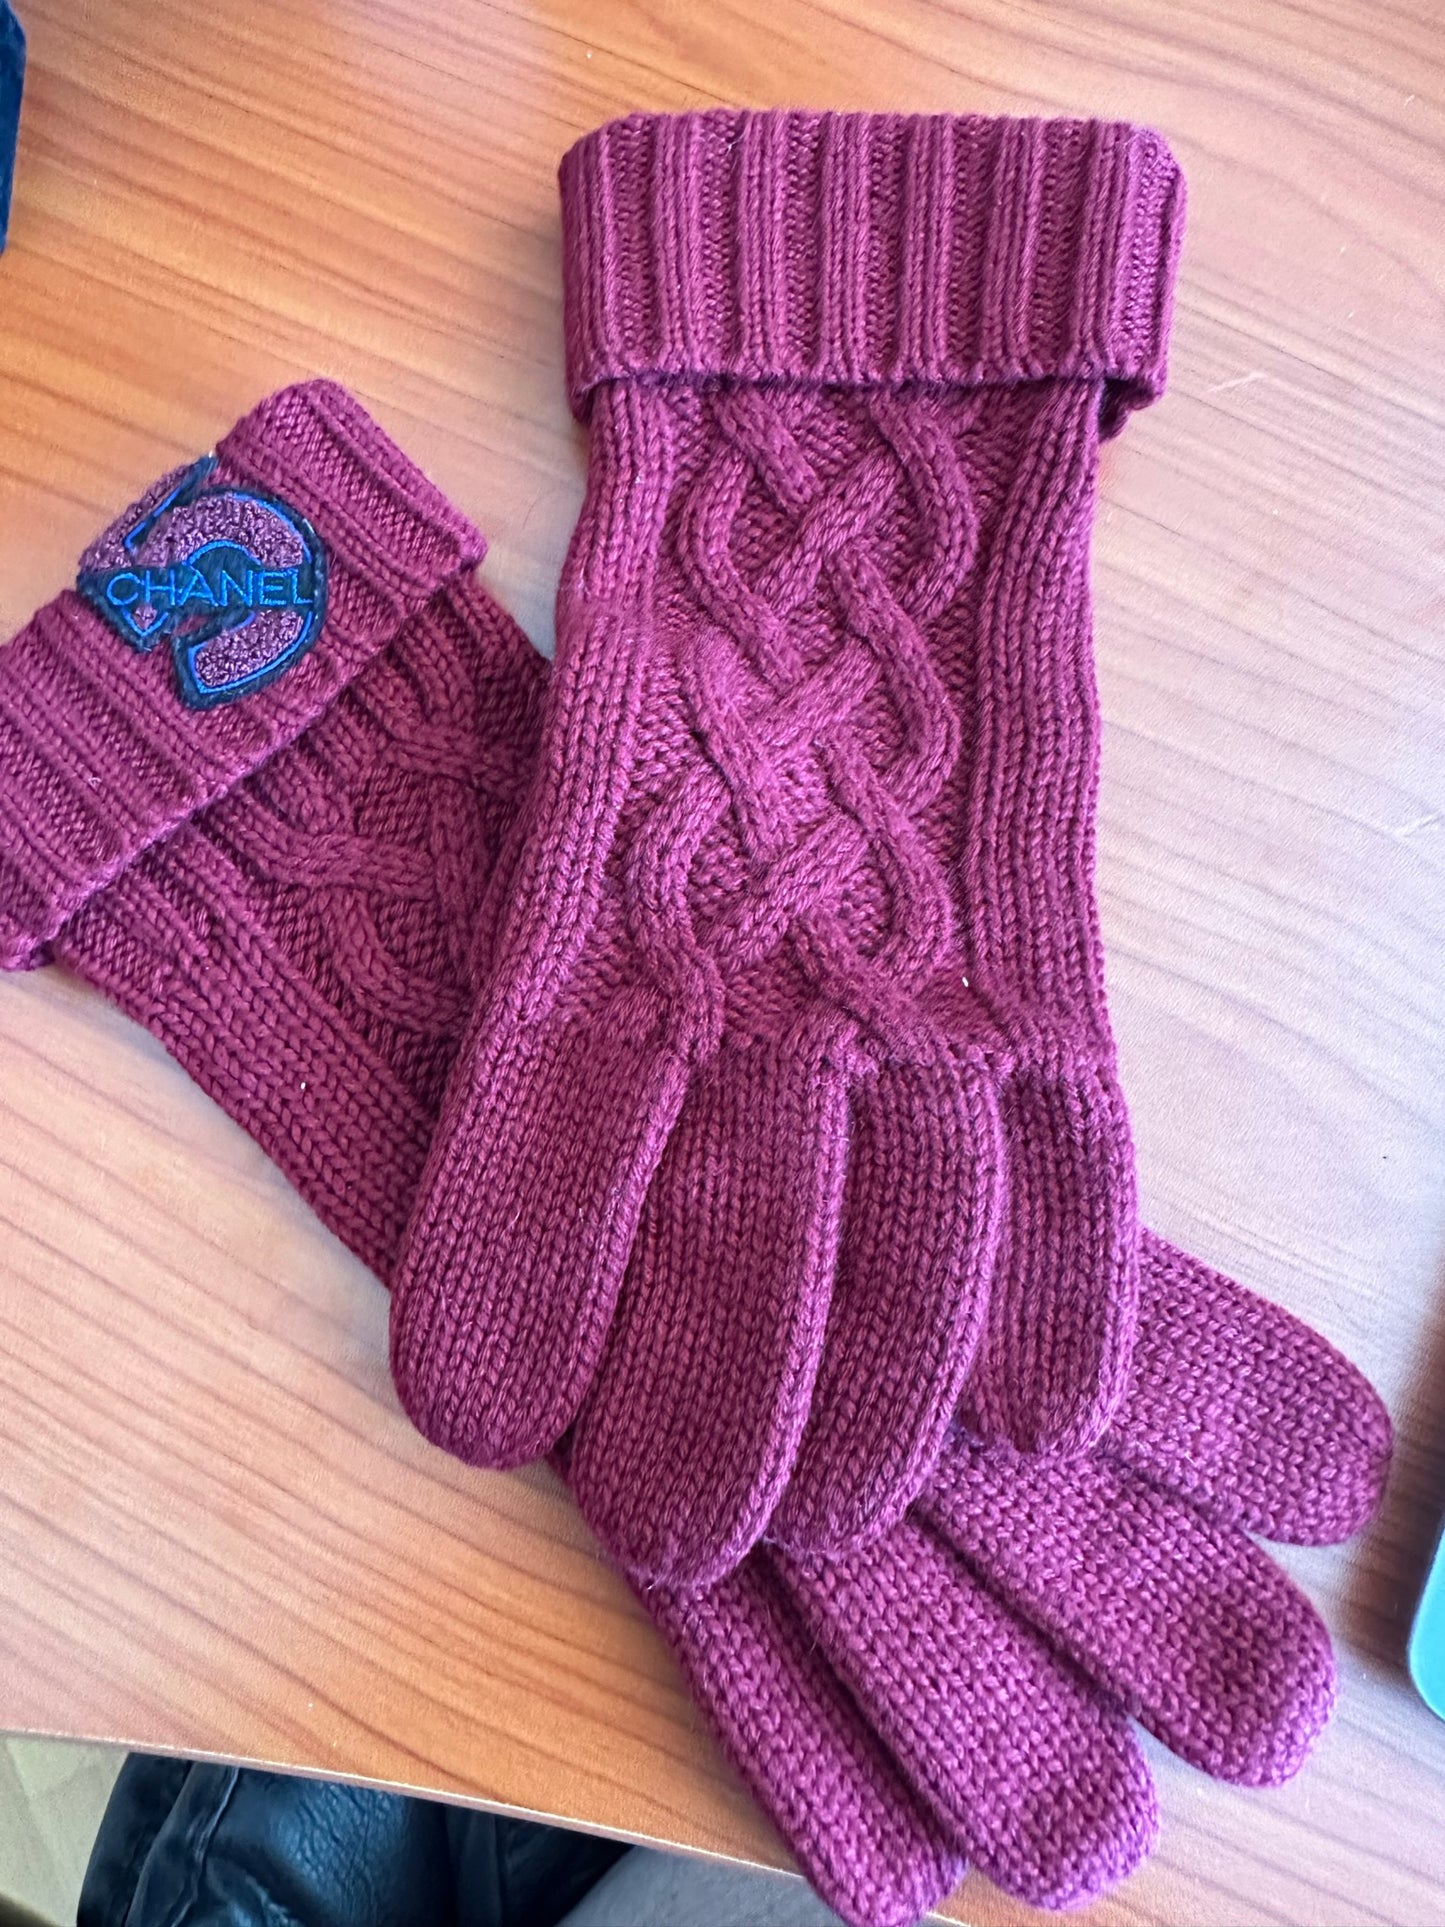 chanel burgundy vintage cashmere gloves excellent